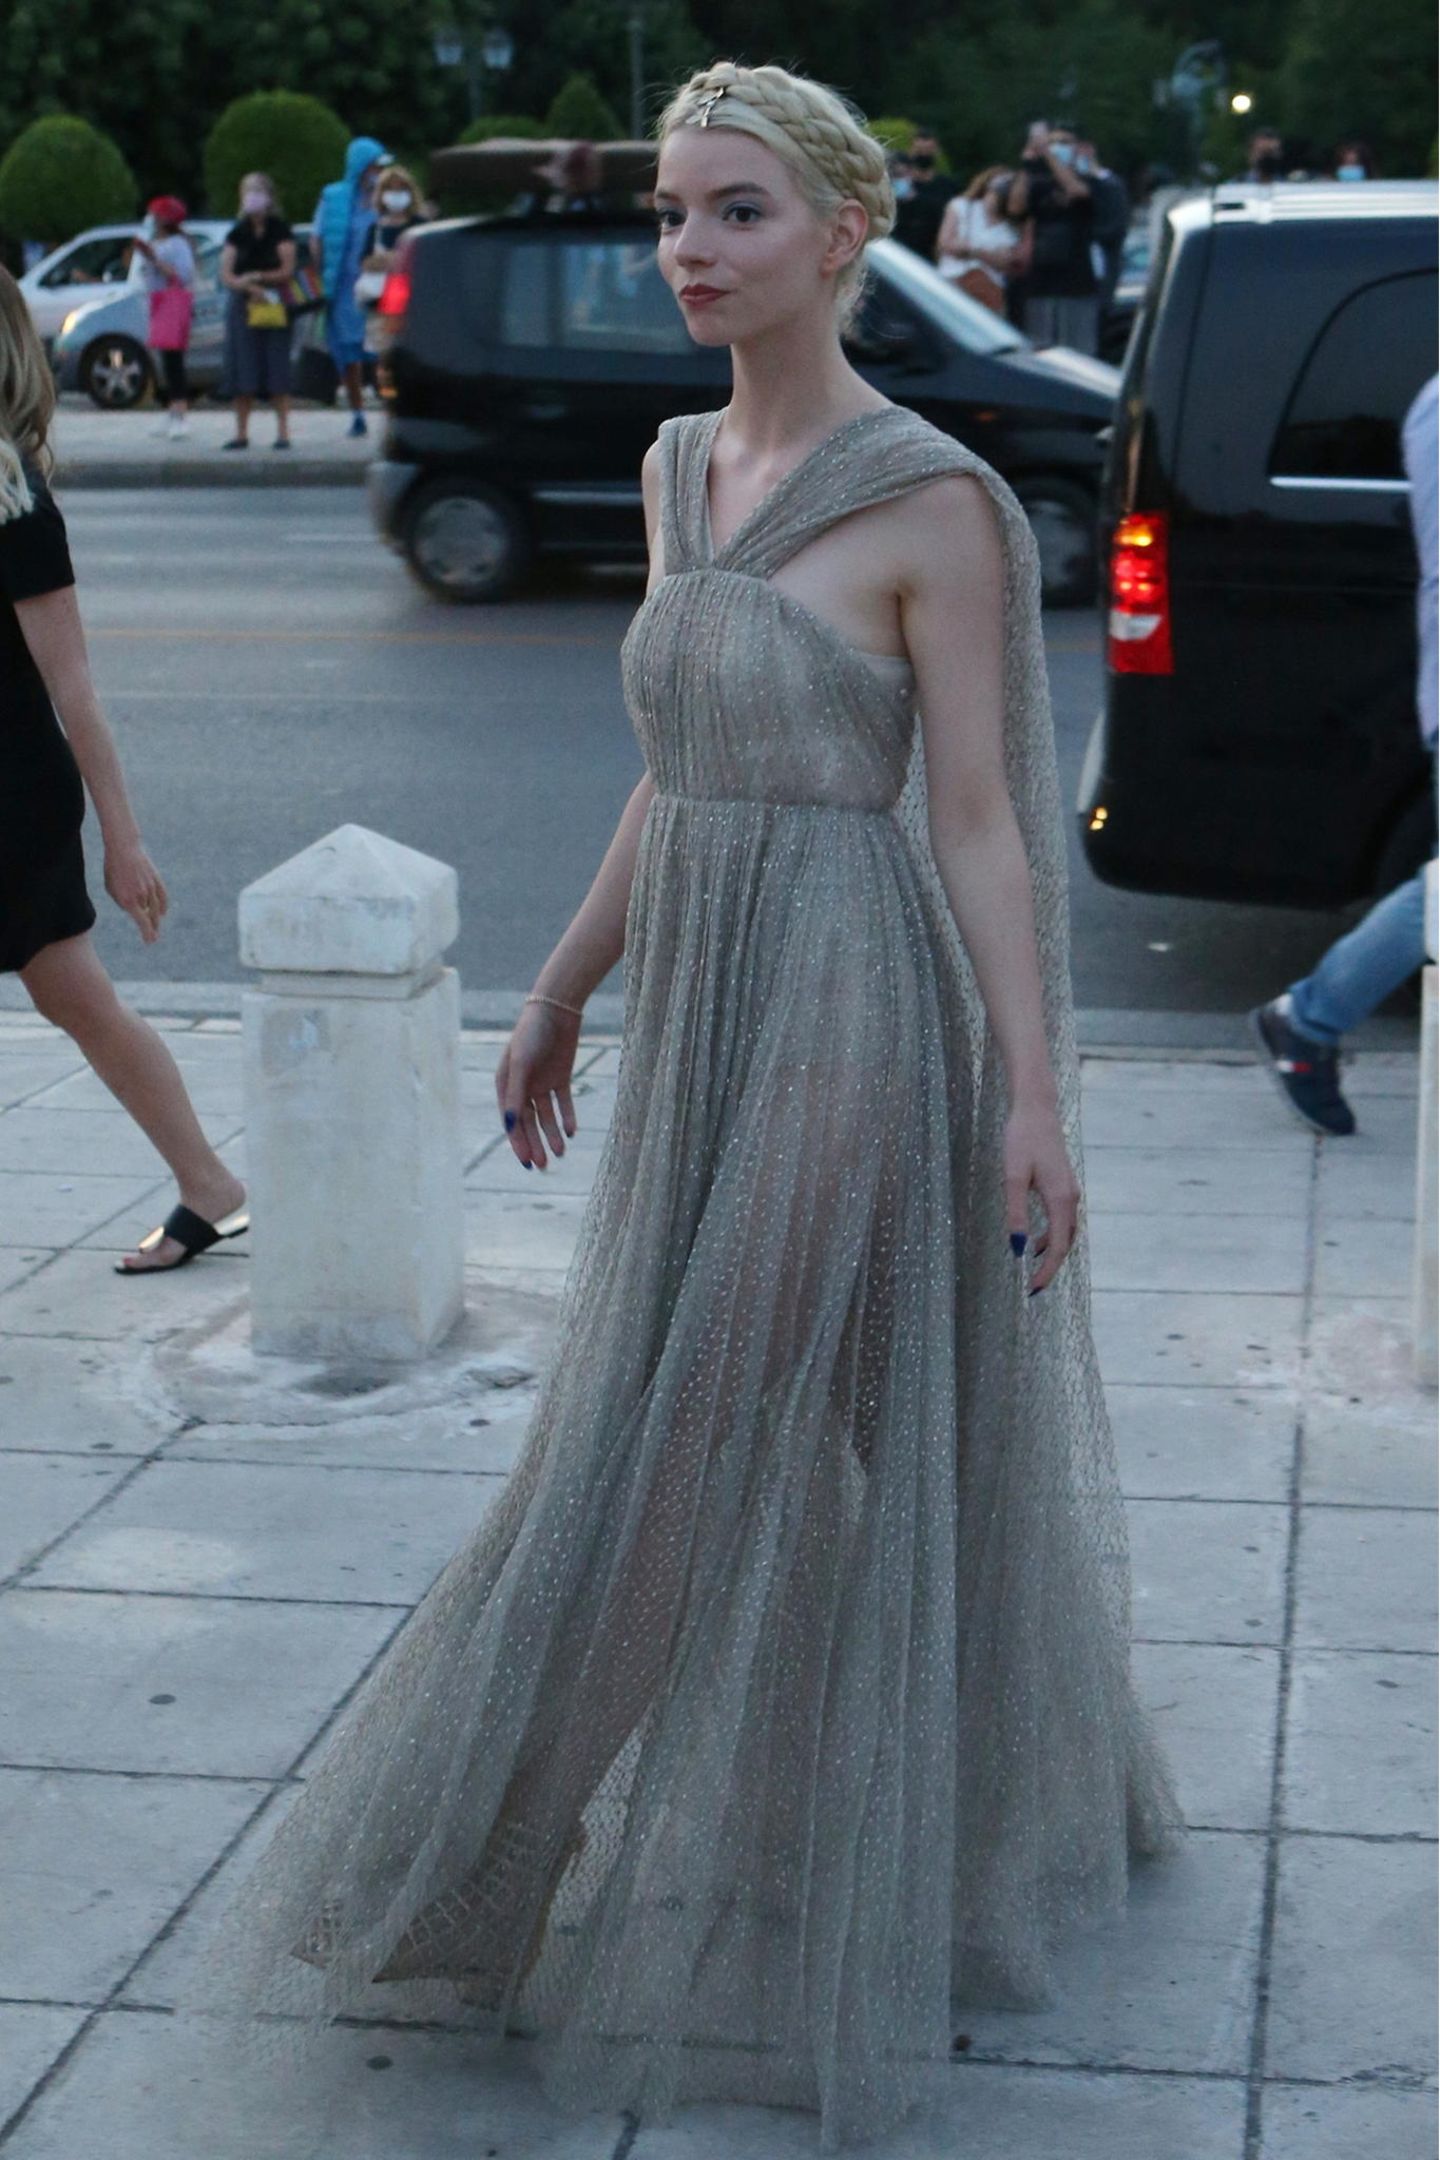 Anya Taylor-Joy schwebt in ihrem leicht durchsichtigen Dress von Dior zur Show. Der zarte Grün-Grau-Ton passt perfekt zu ihrem elfenhaften Look. 